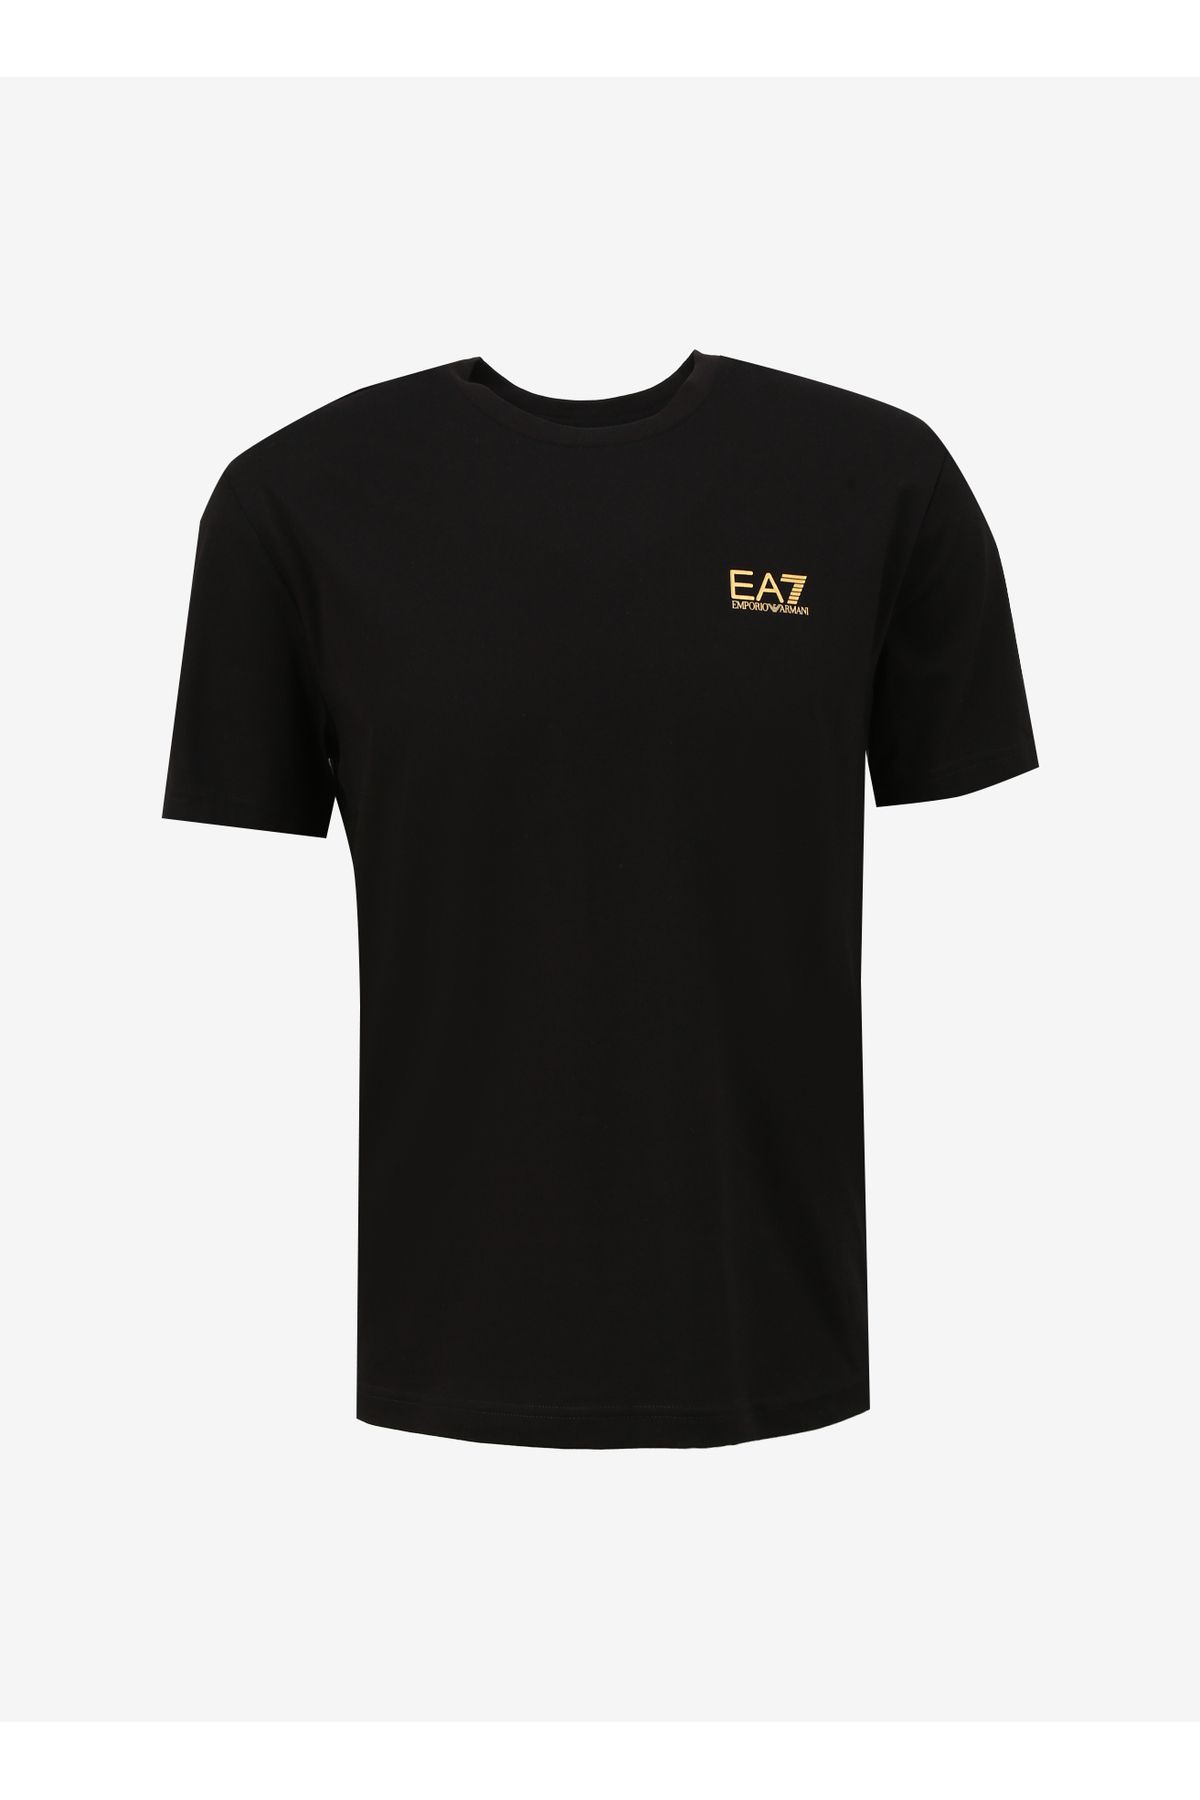 EA7 Bisiklet Yaka Siyah Erkek T-shirt 8npt18pj02z